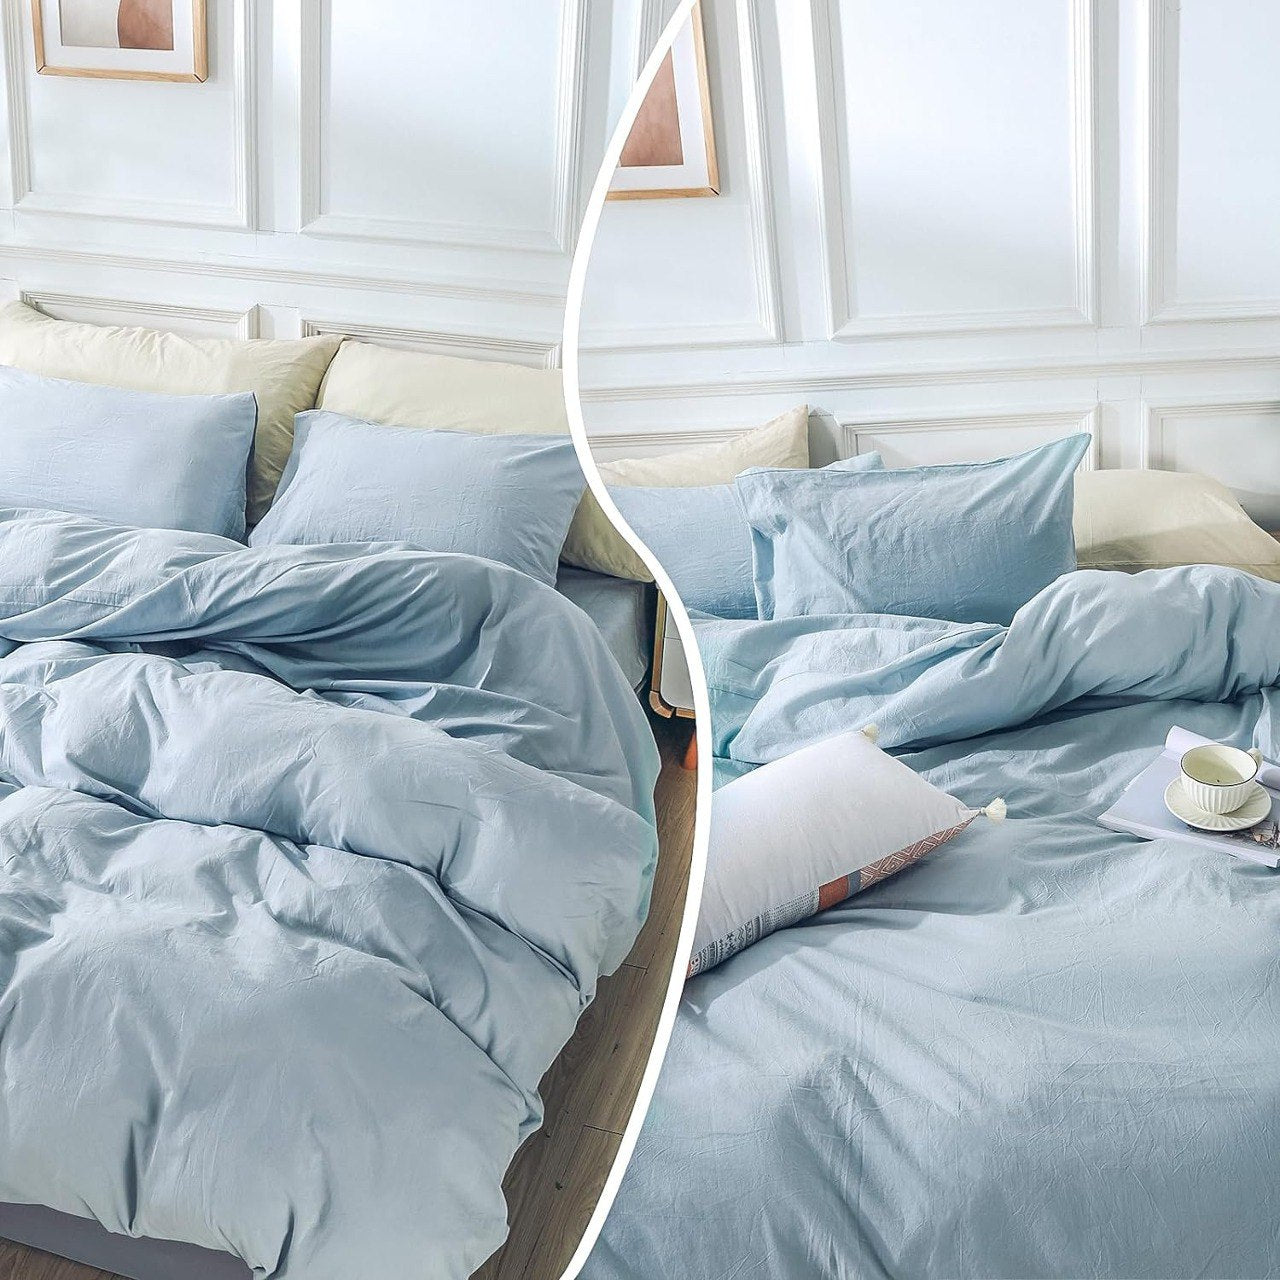 Sublimez votre lit avec notre collection de linge de lit haut de gamme